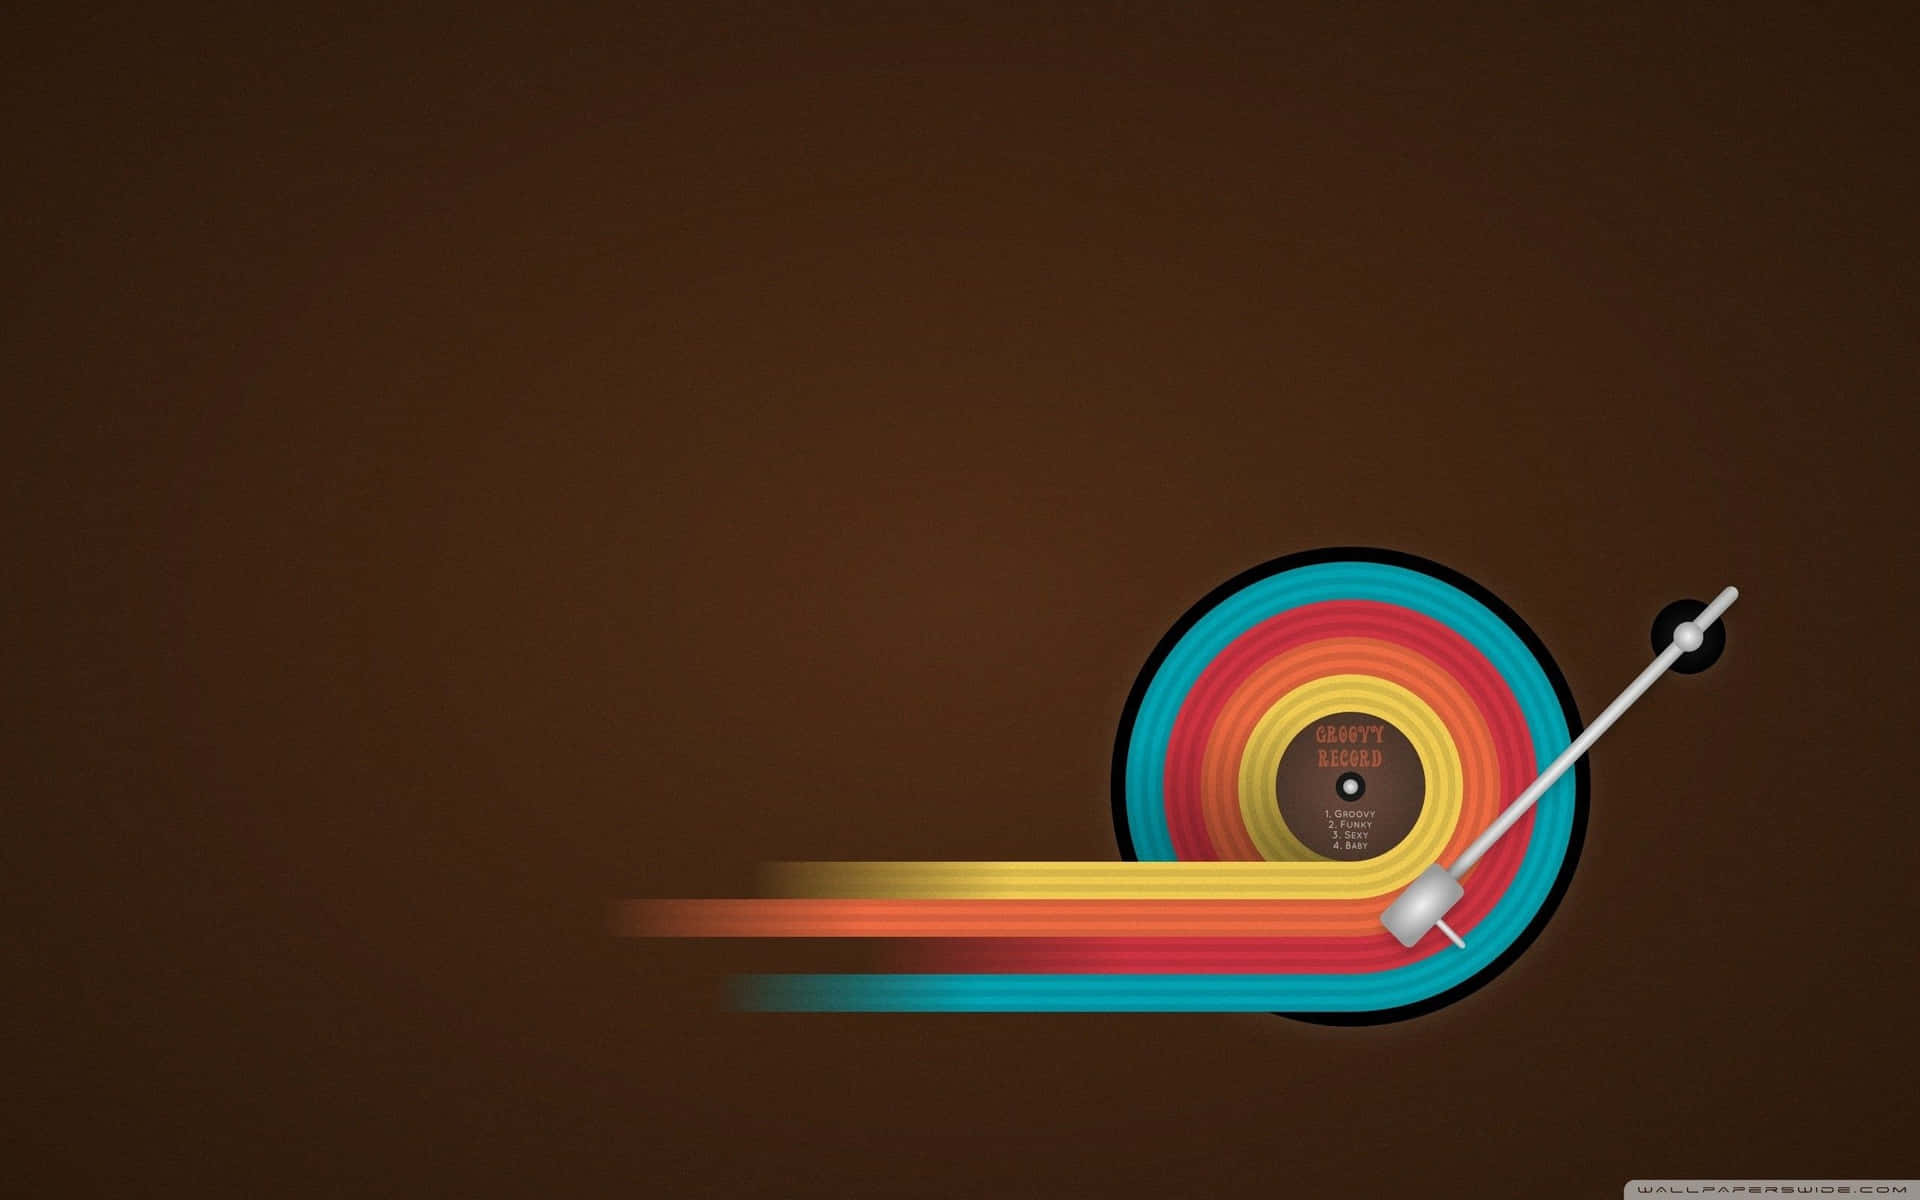 Multicolored Vinyl Record Digital Art Wallpaper